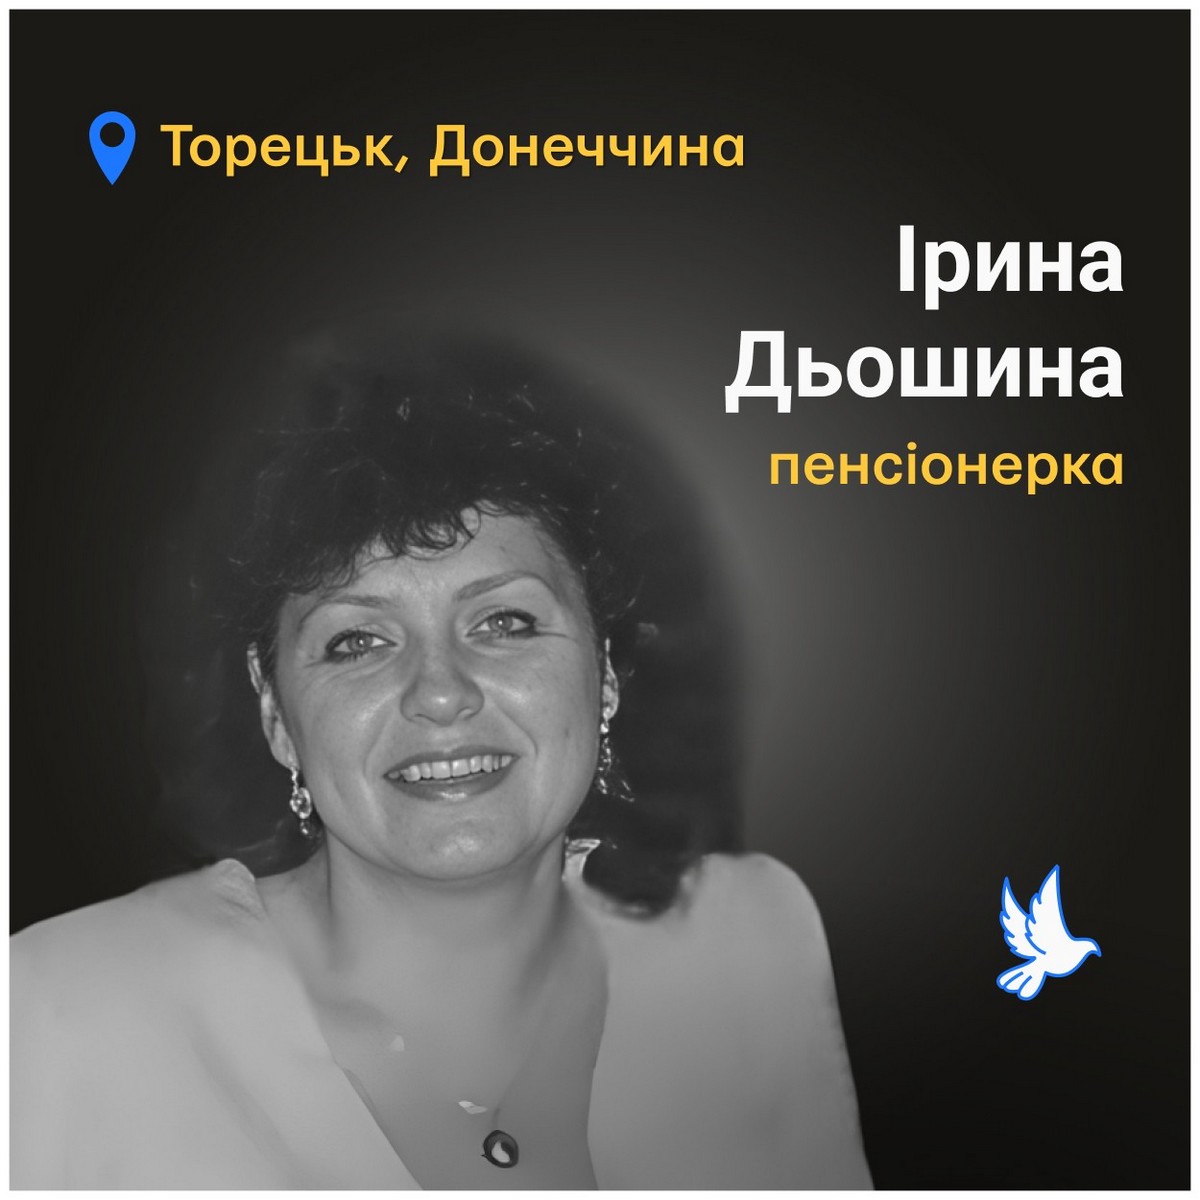 Меморіал: вбиті росією. Ірина Дьошина, 63 роки, Торецьк, травень